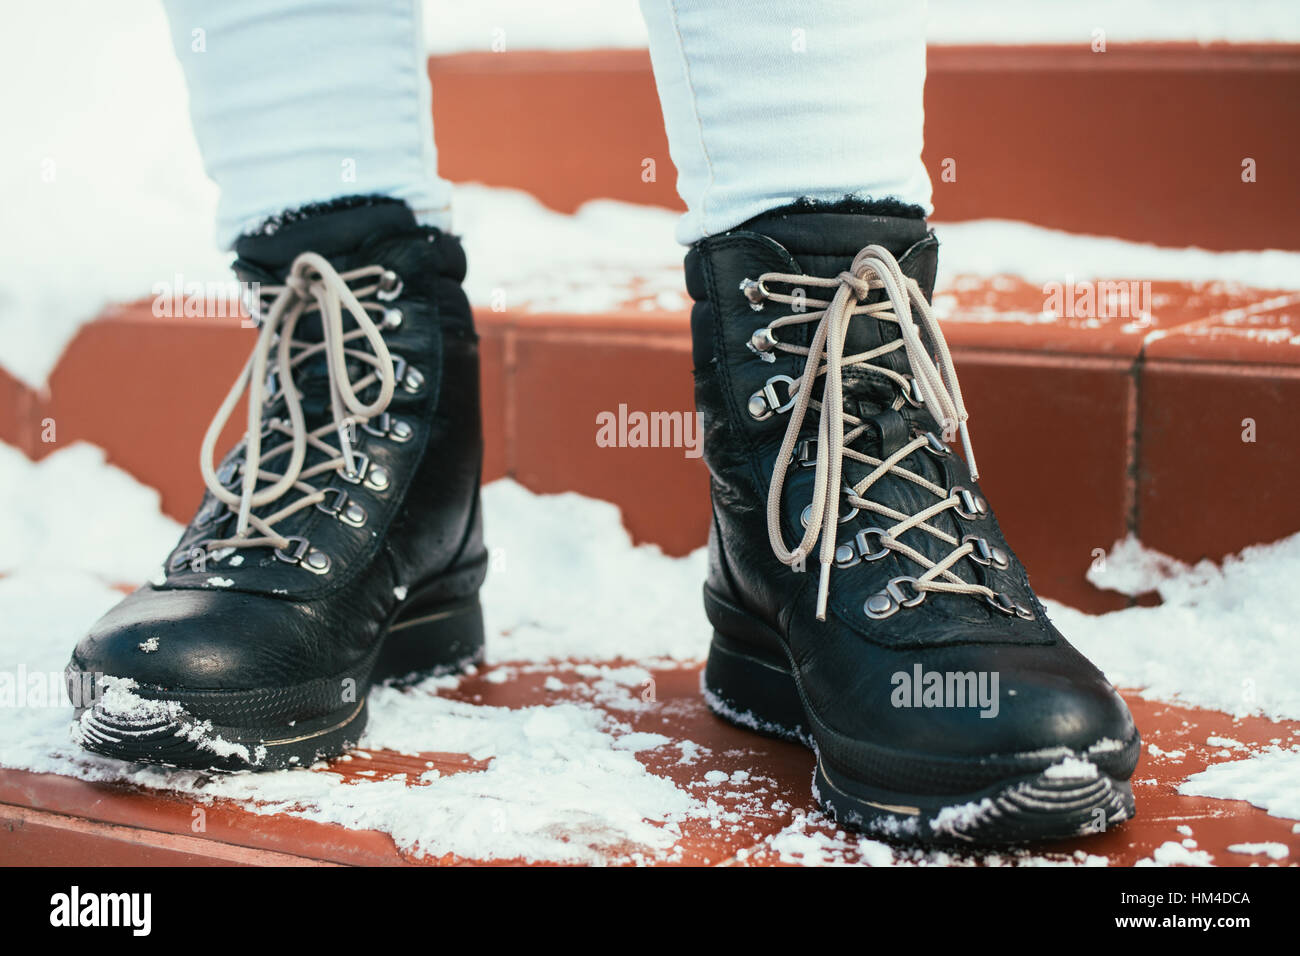 Pieds femelles en hiver des bottes noires avec lacets sont sur l'escalier rouge dans la neige Banque D'Images